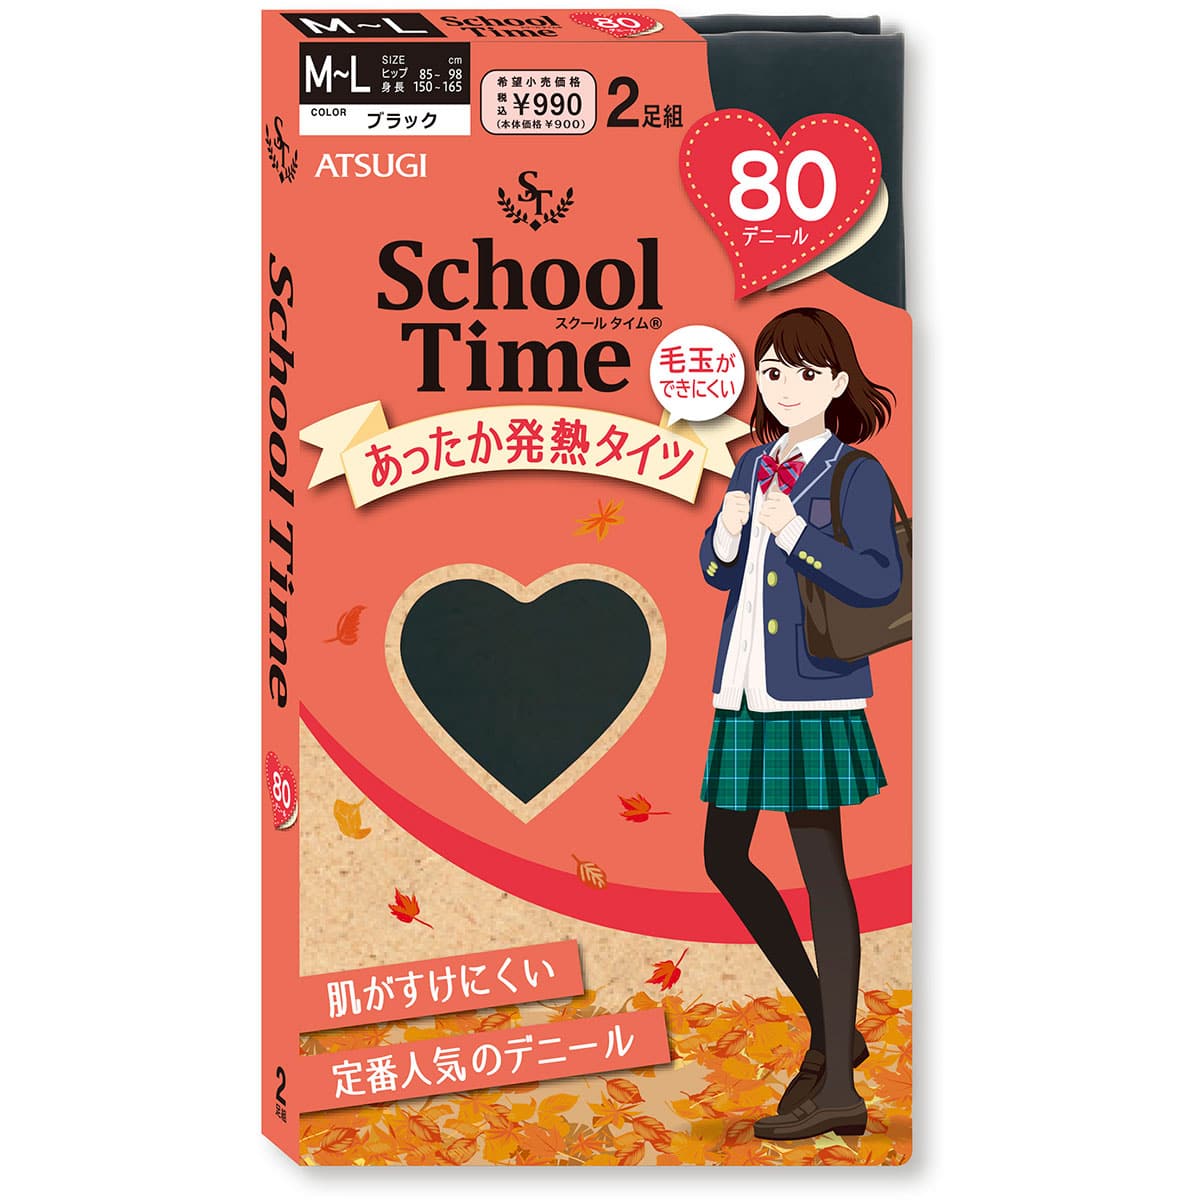 公式) School time / スクールタイム スクールタイツ 80デニール | ATSUGI（アツギ）公式直販